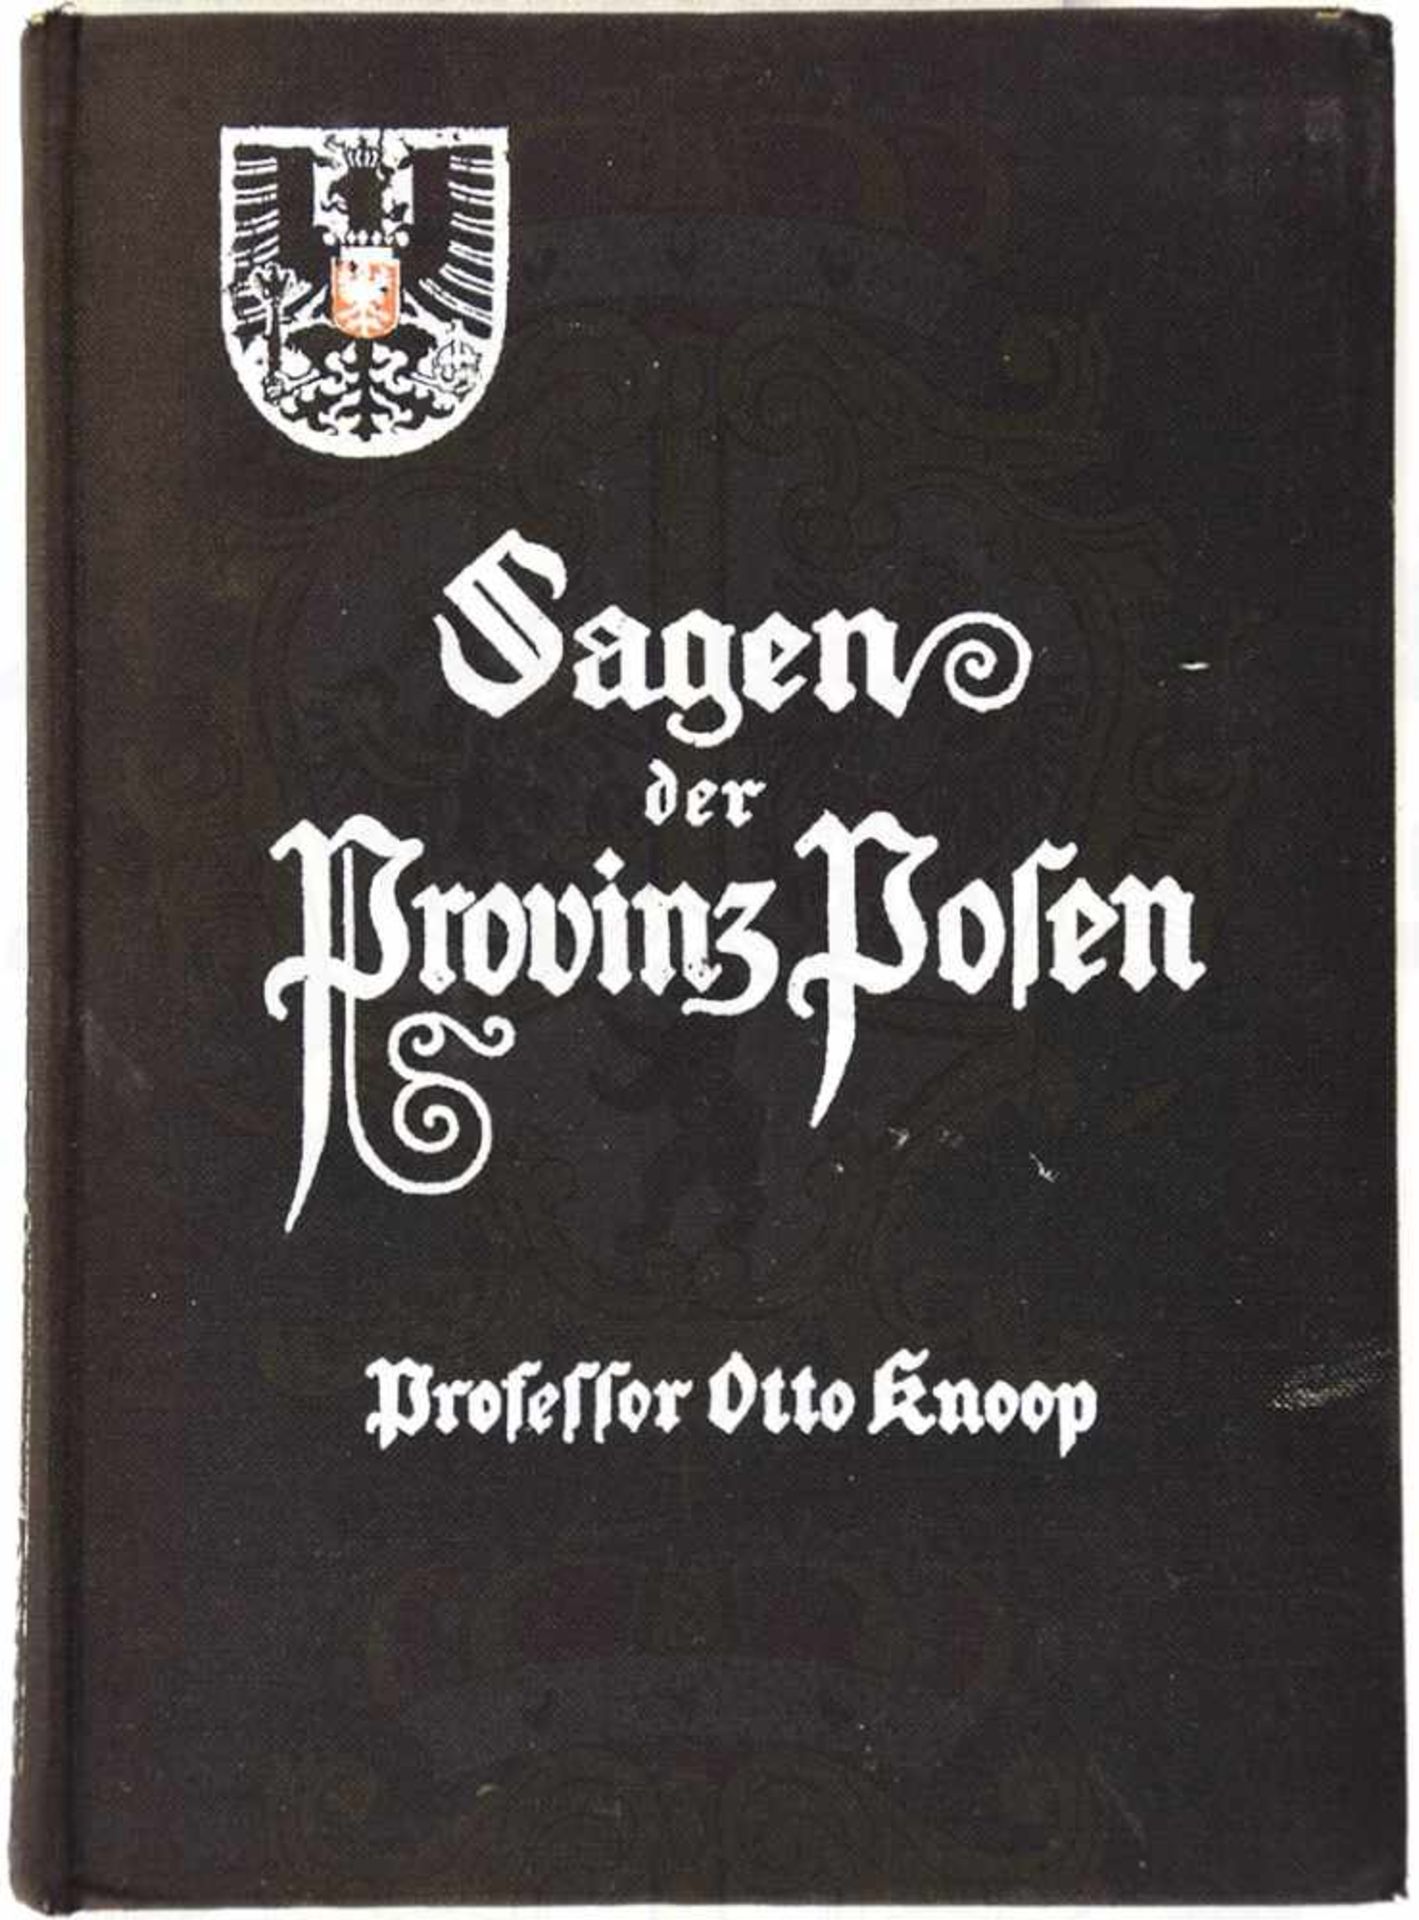 SAGEN DER PROVINZ POSEN, Prof. Otto Knoop, Hermann Eichblatt V., Bln.-Friedenau 1913, Fotos, Abb. u.